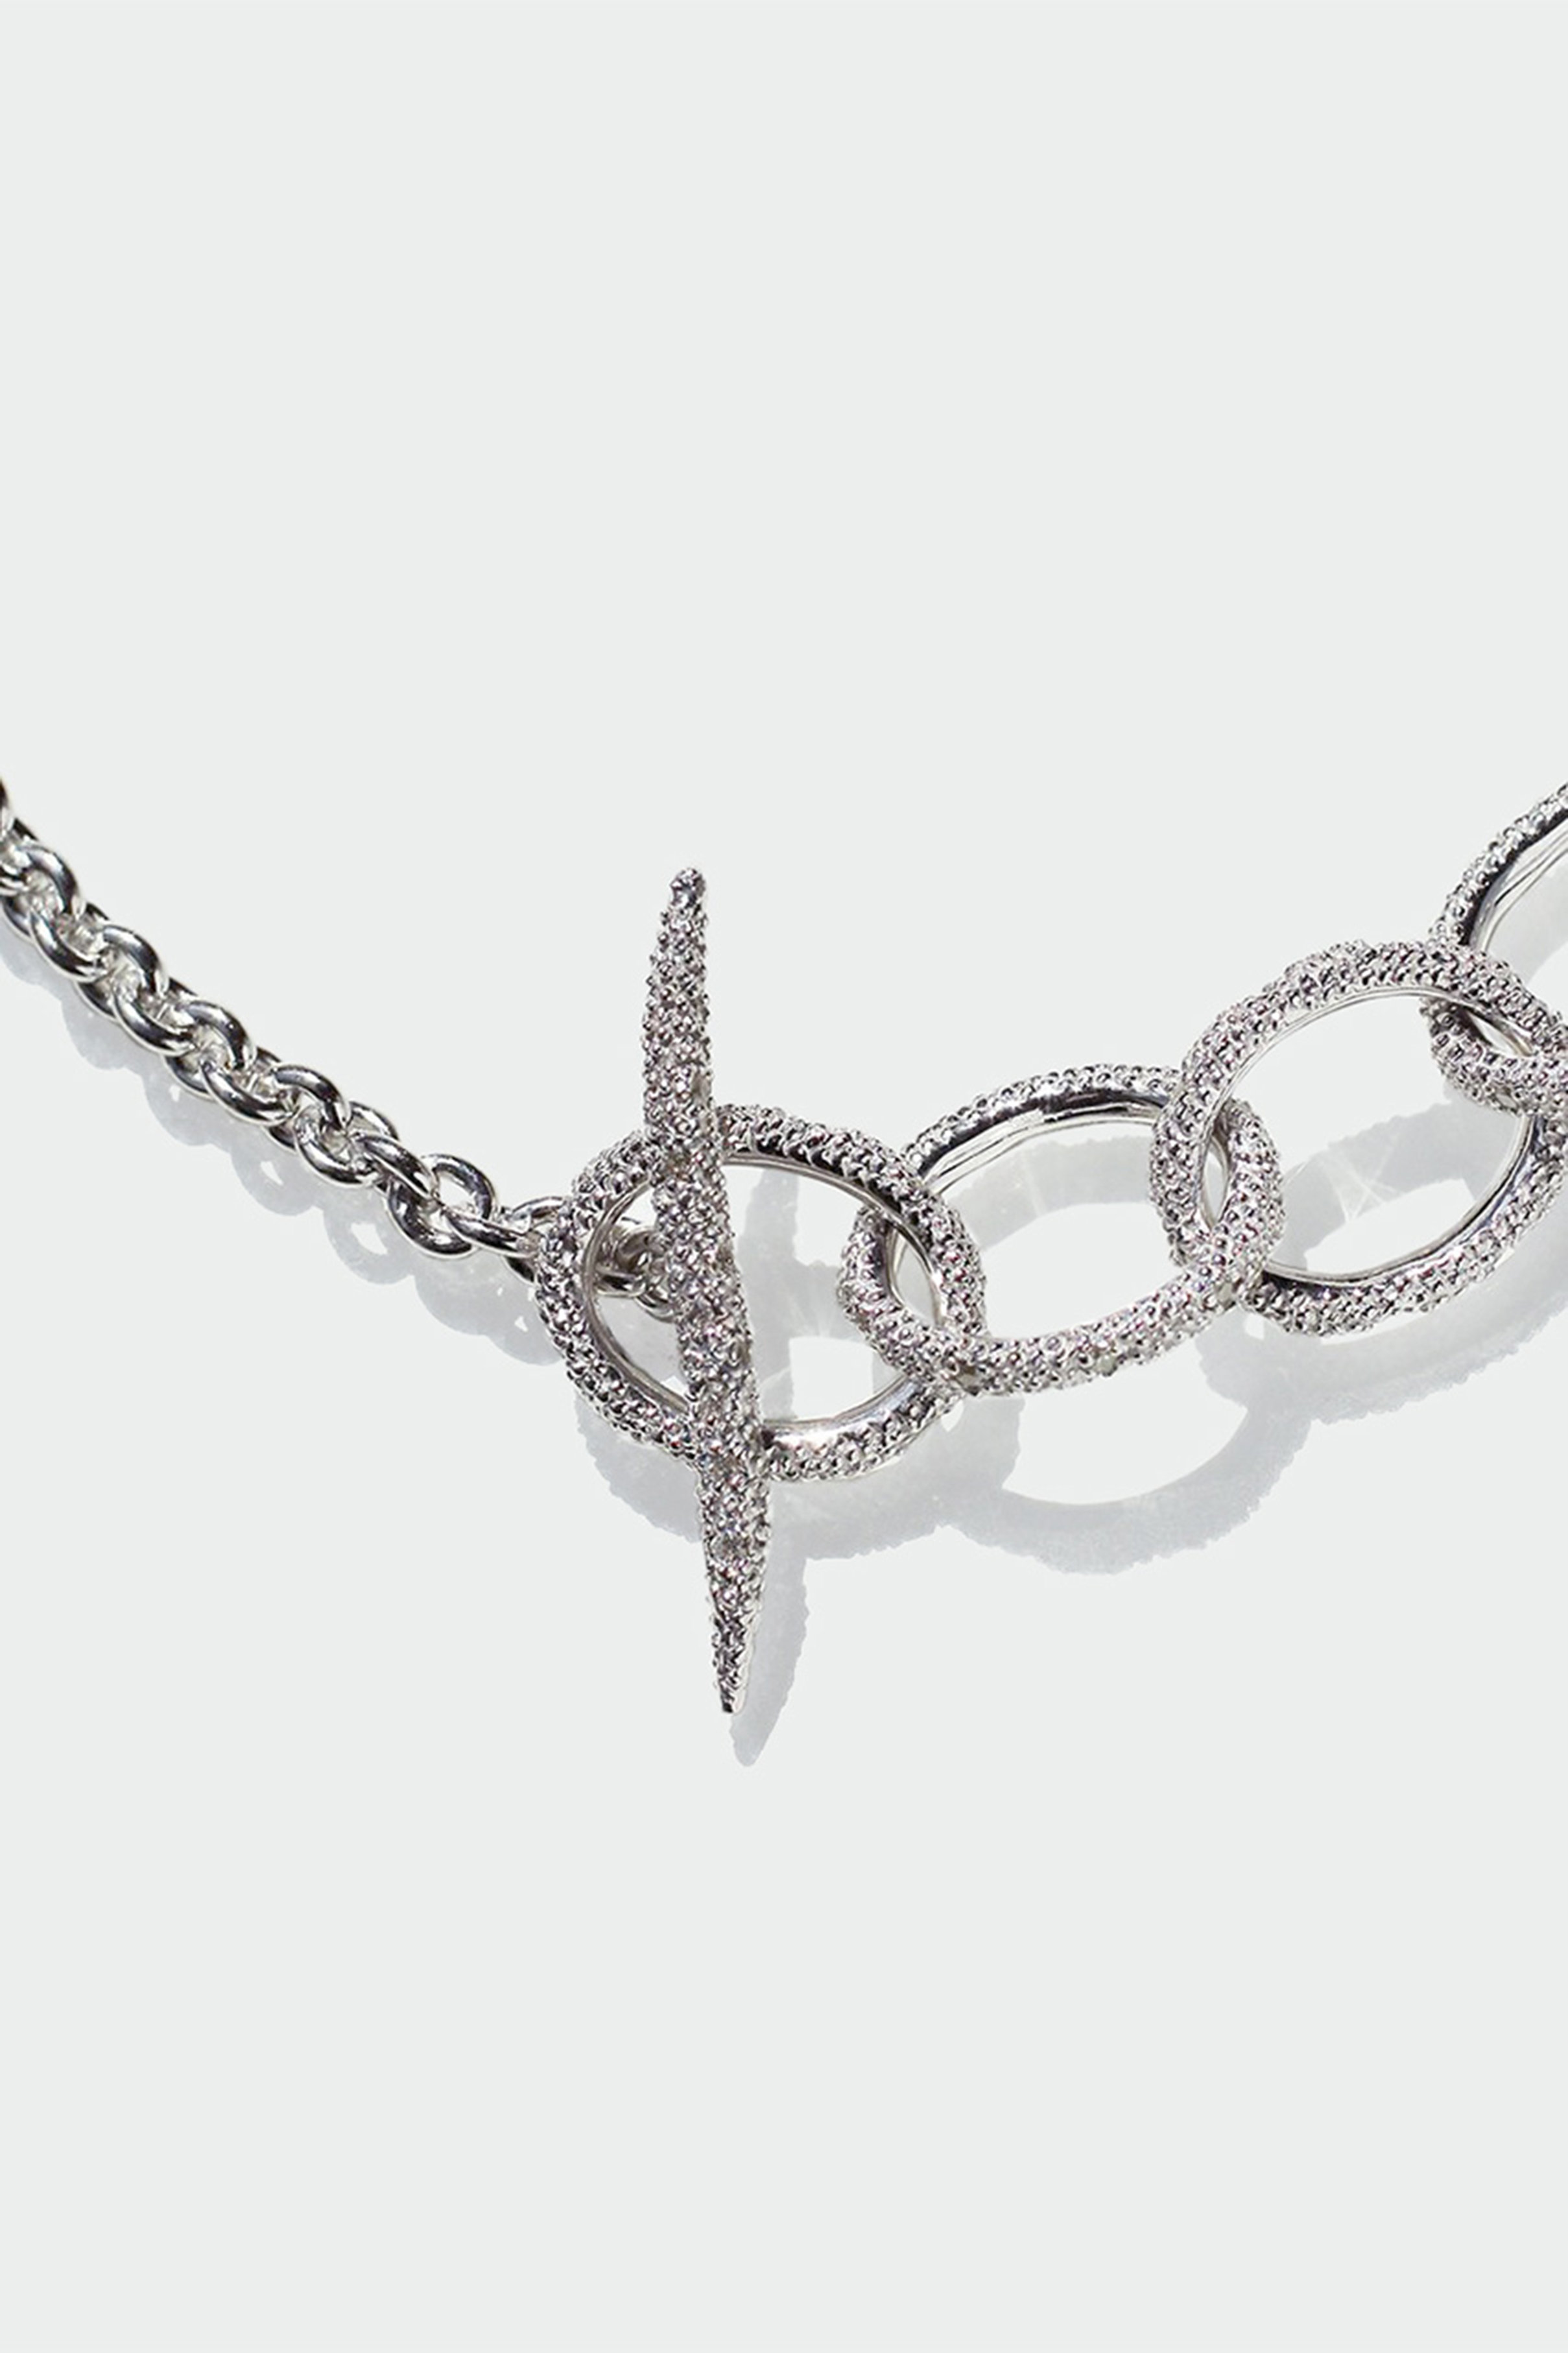 アヤミジュエリー Pave Chain Short Necklace ネックレス